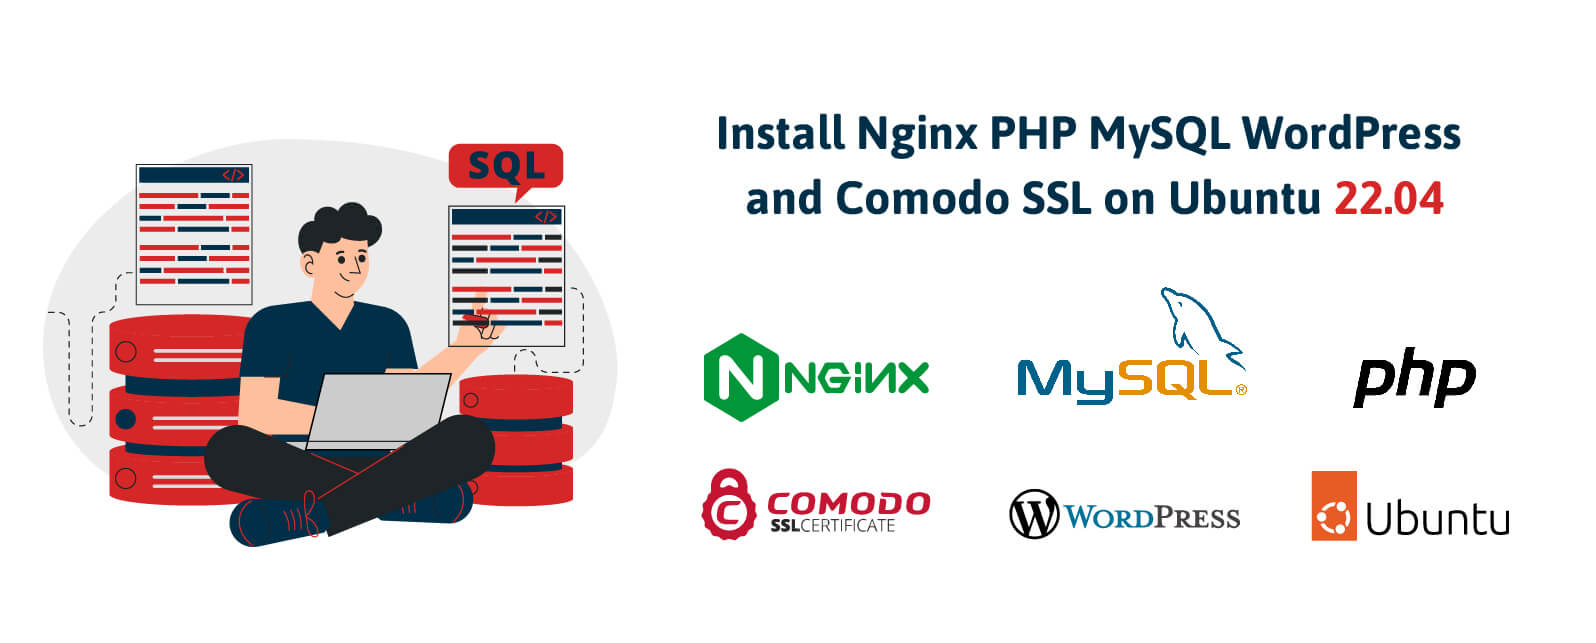 Install Nginx PHP MySQL WordPress and Comodo SSL on Ubuntu 22.04